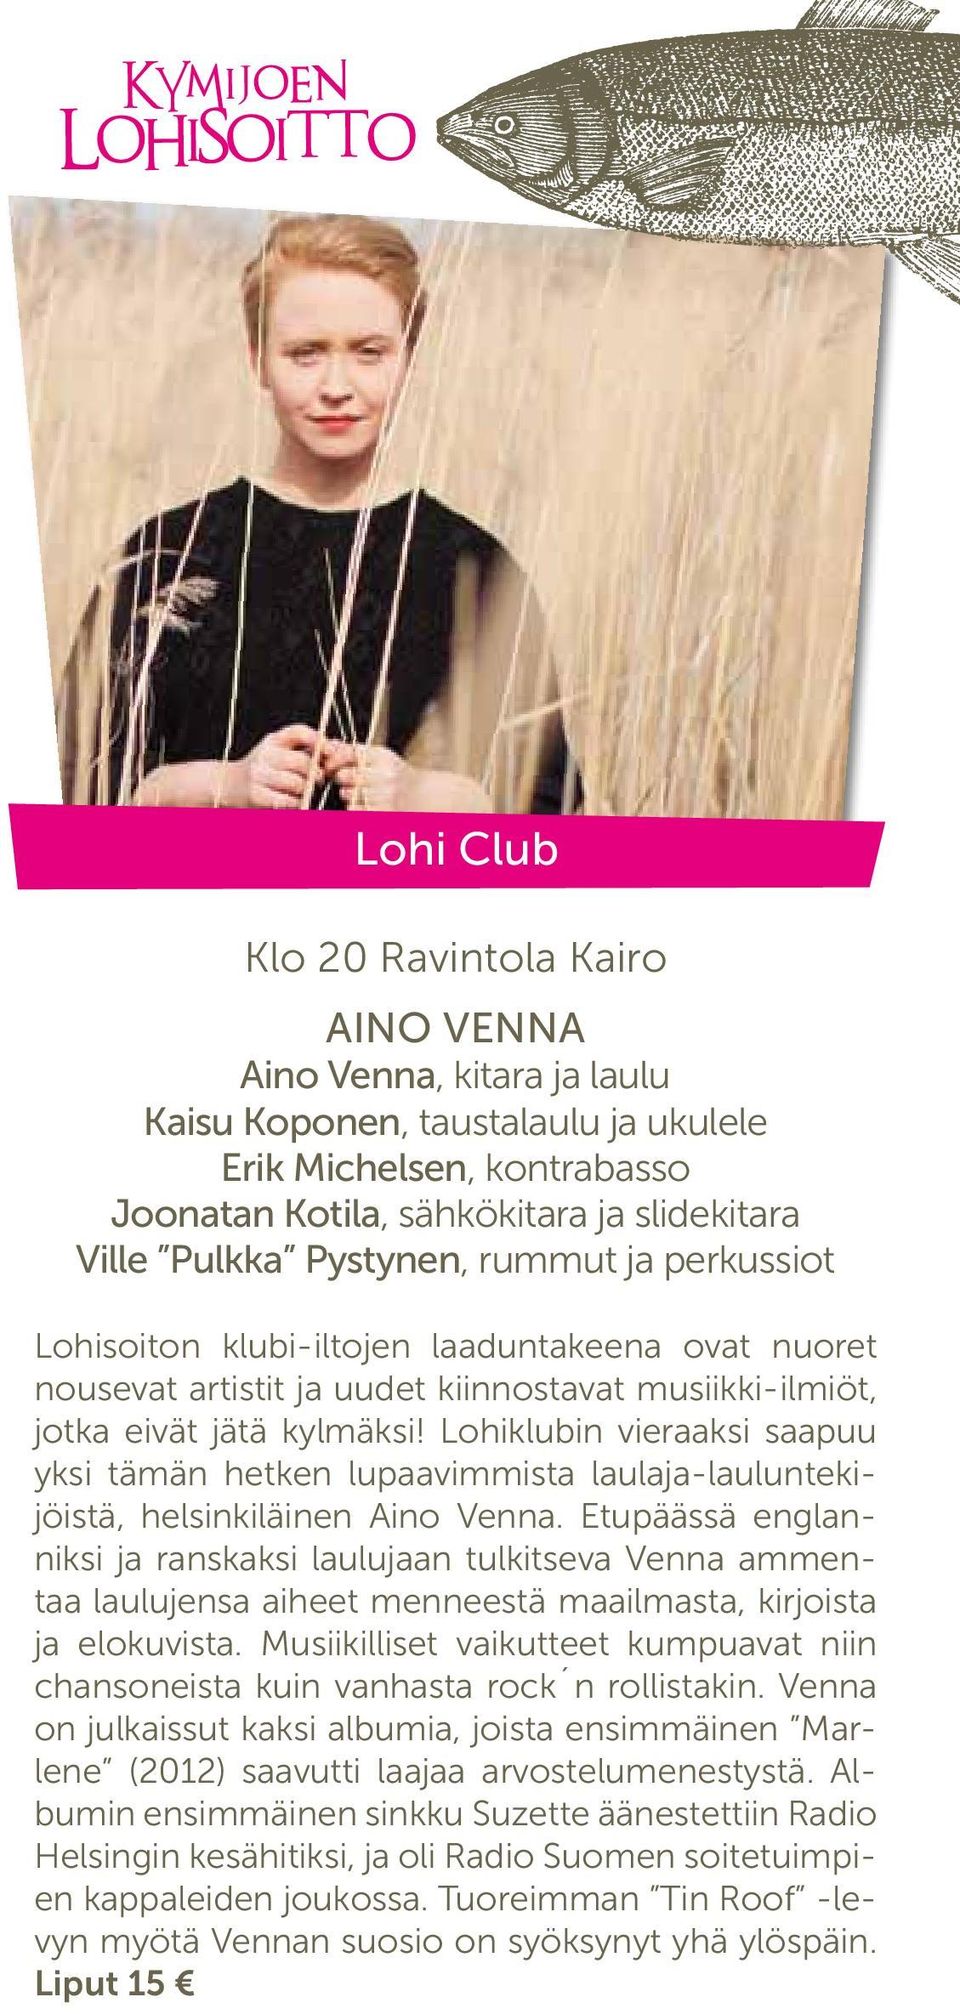 Lohiklubin vieraaksi saapuu yksi tämän hetken lupaavimmista laulaja-lauluntekijöistä, helsinkiläinen Aino Venna.